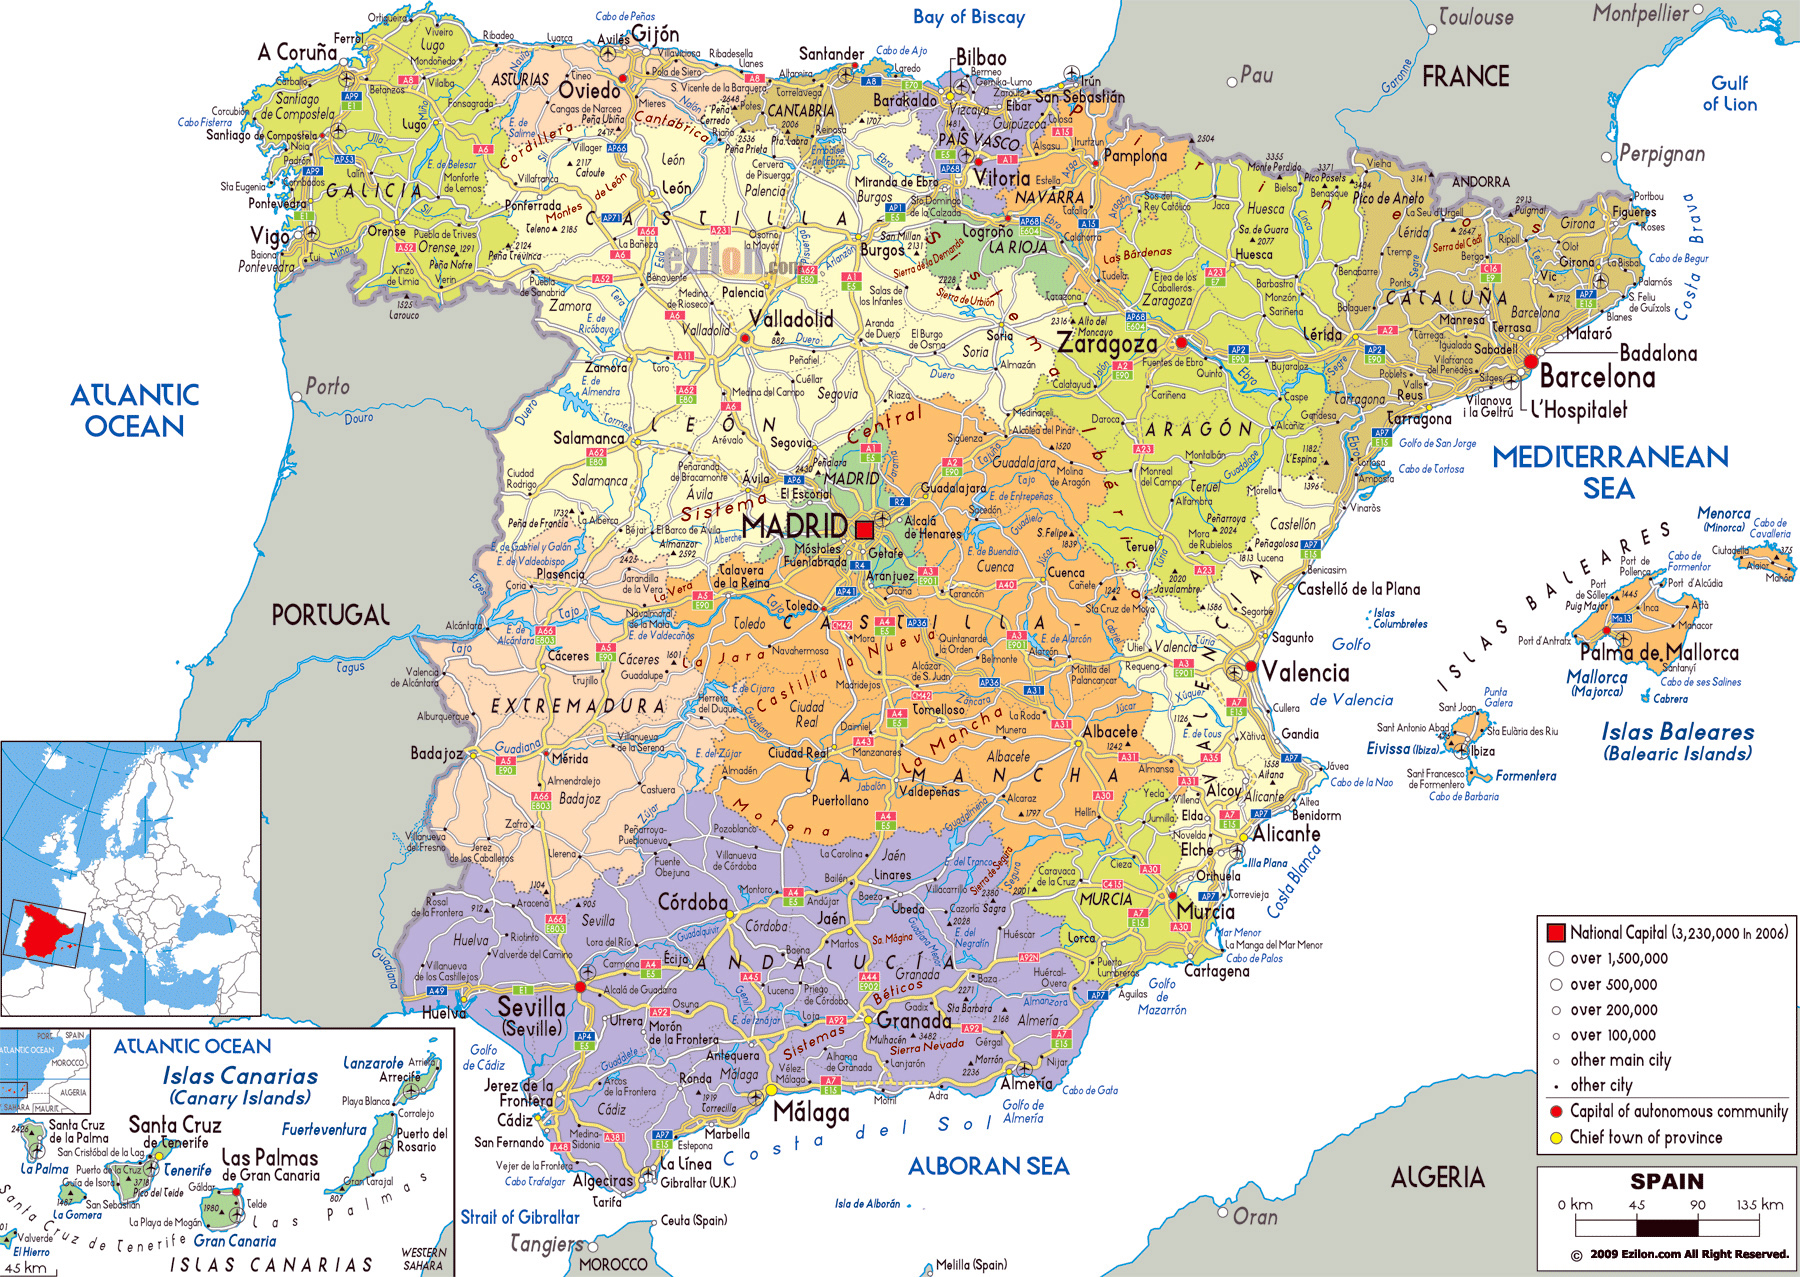 Mapa De Espana Ciudades